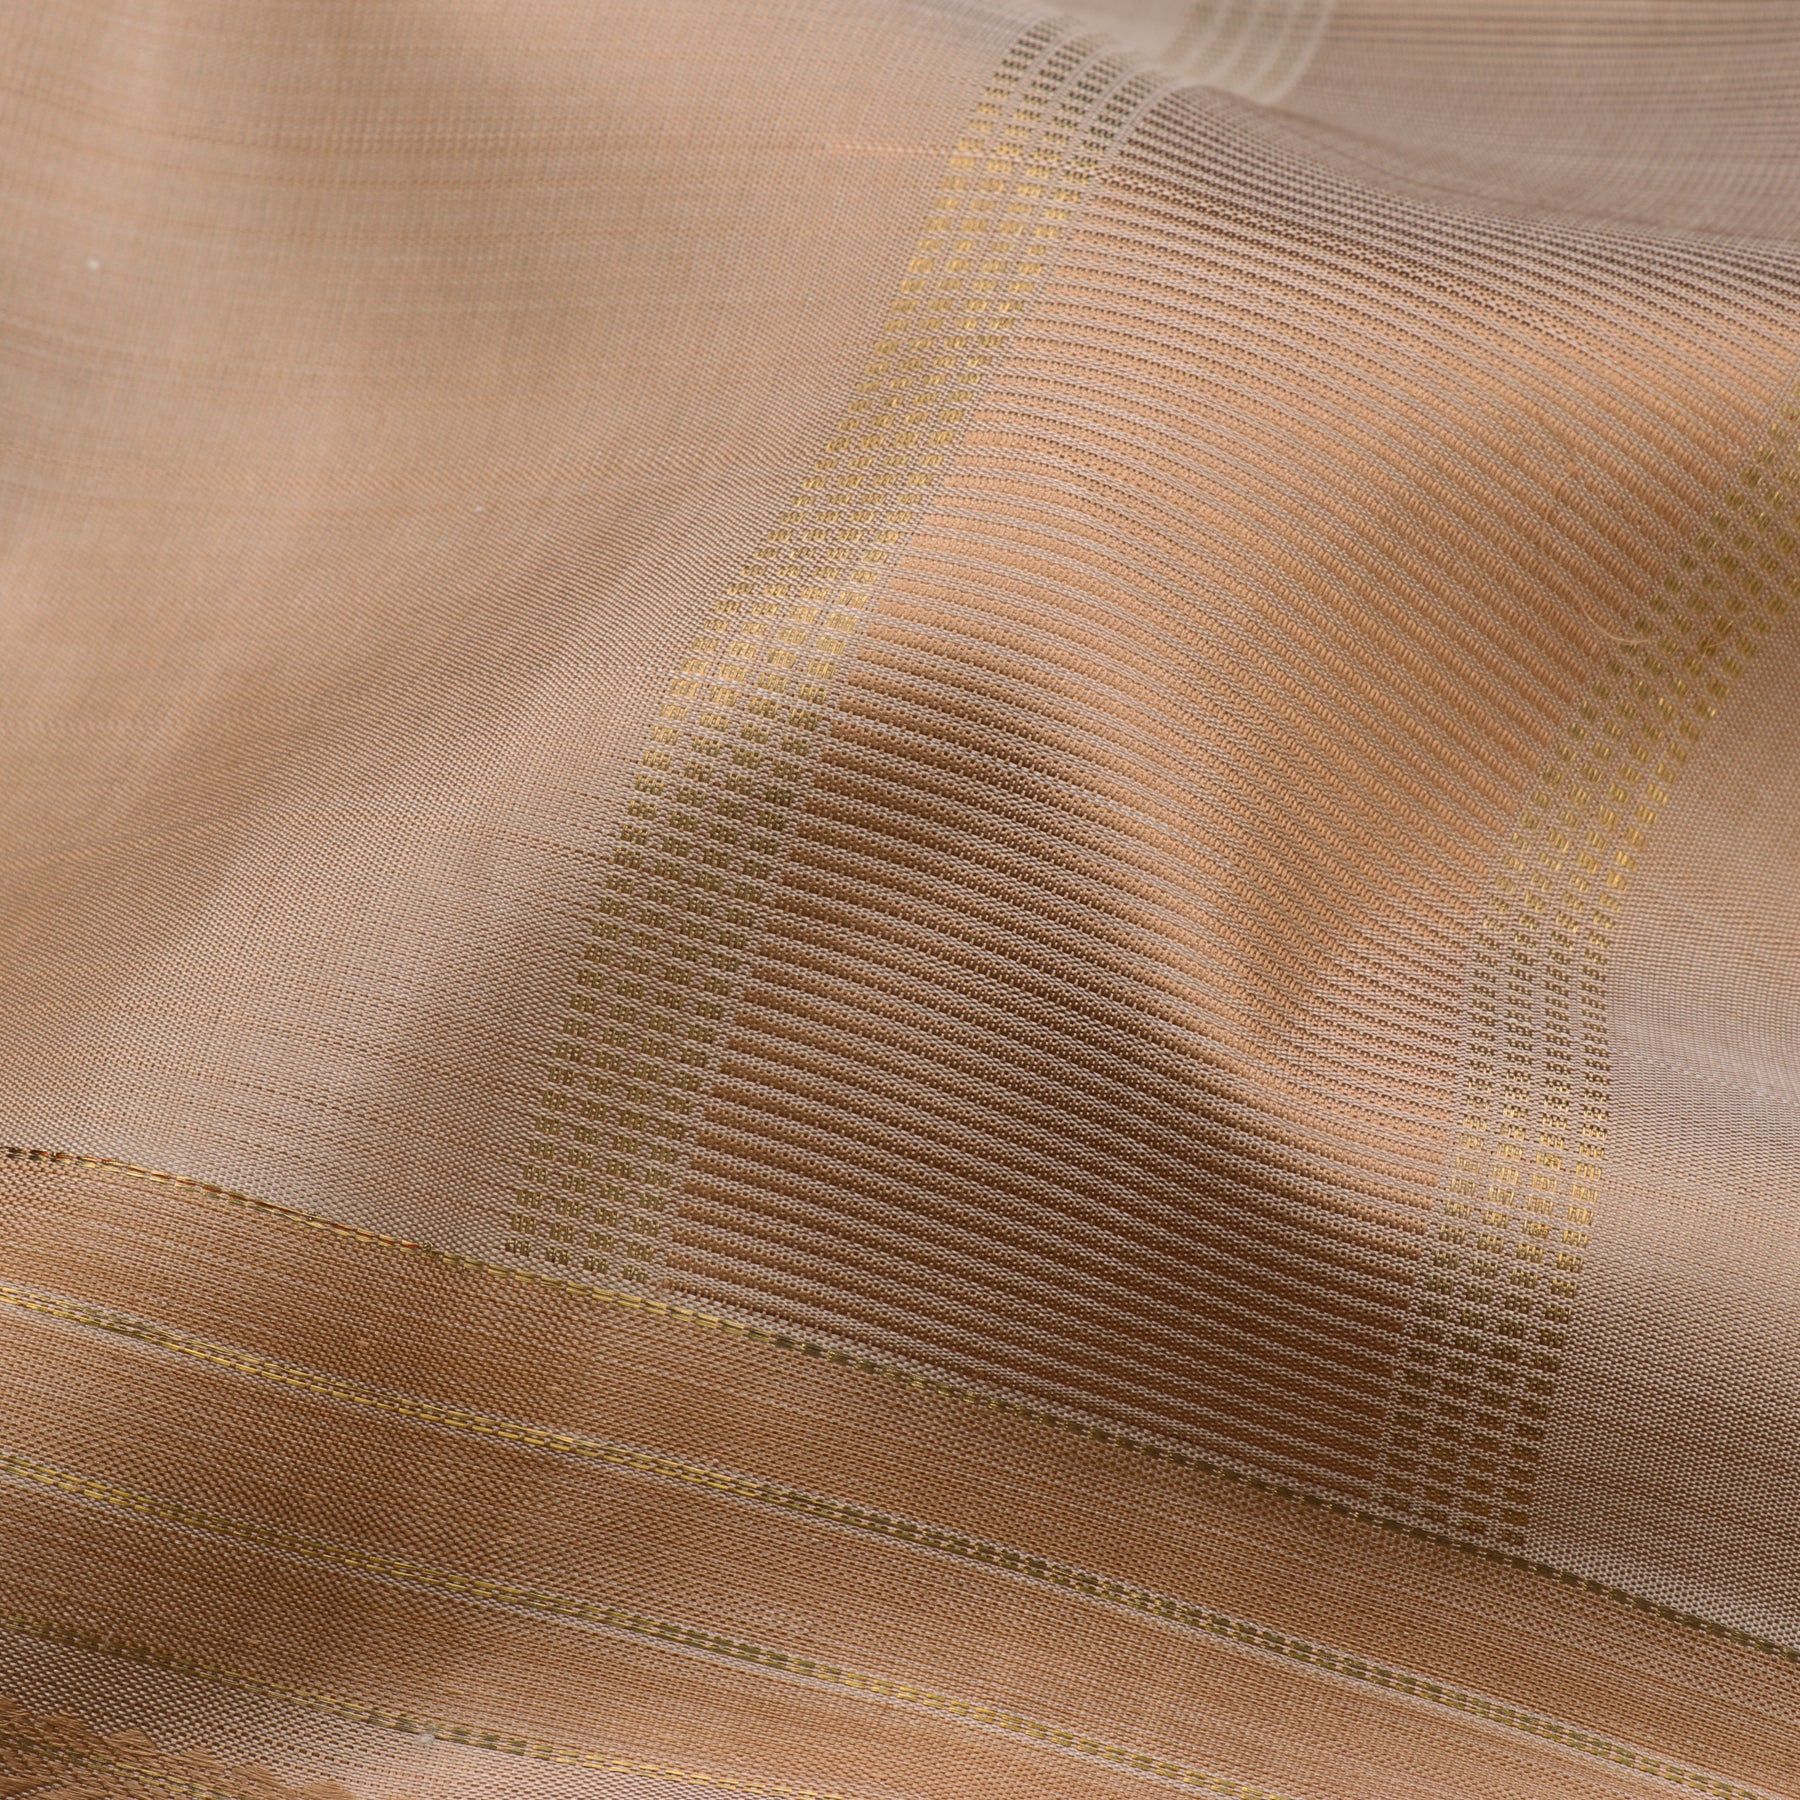 Kanakavalli Kanjivaram Silk Angavastram Set 110-19-90058 - Detail Fabric View